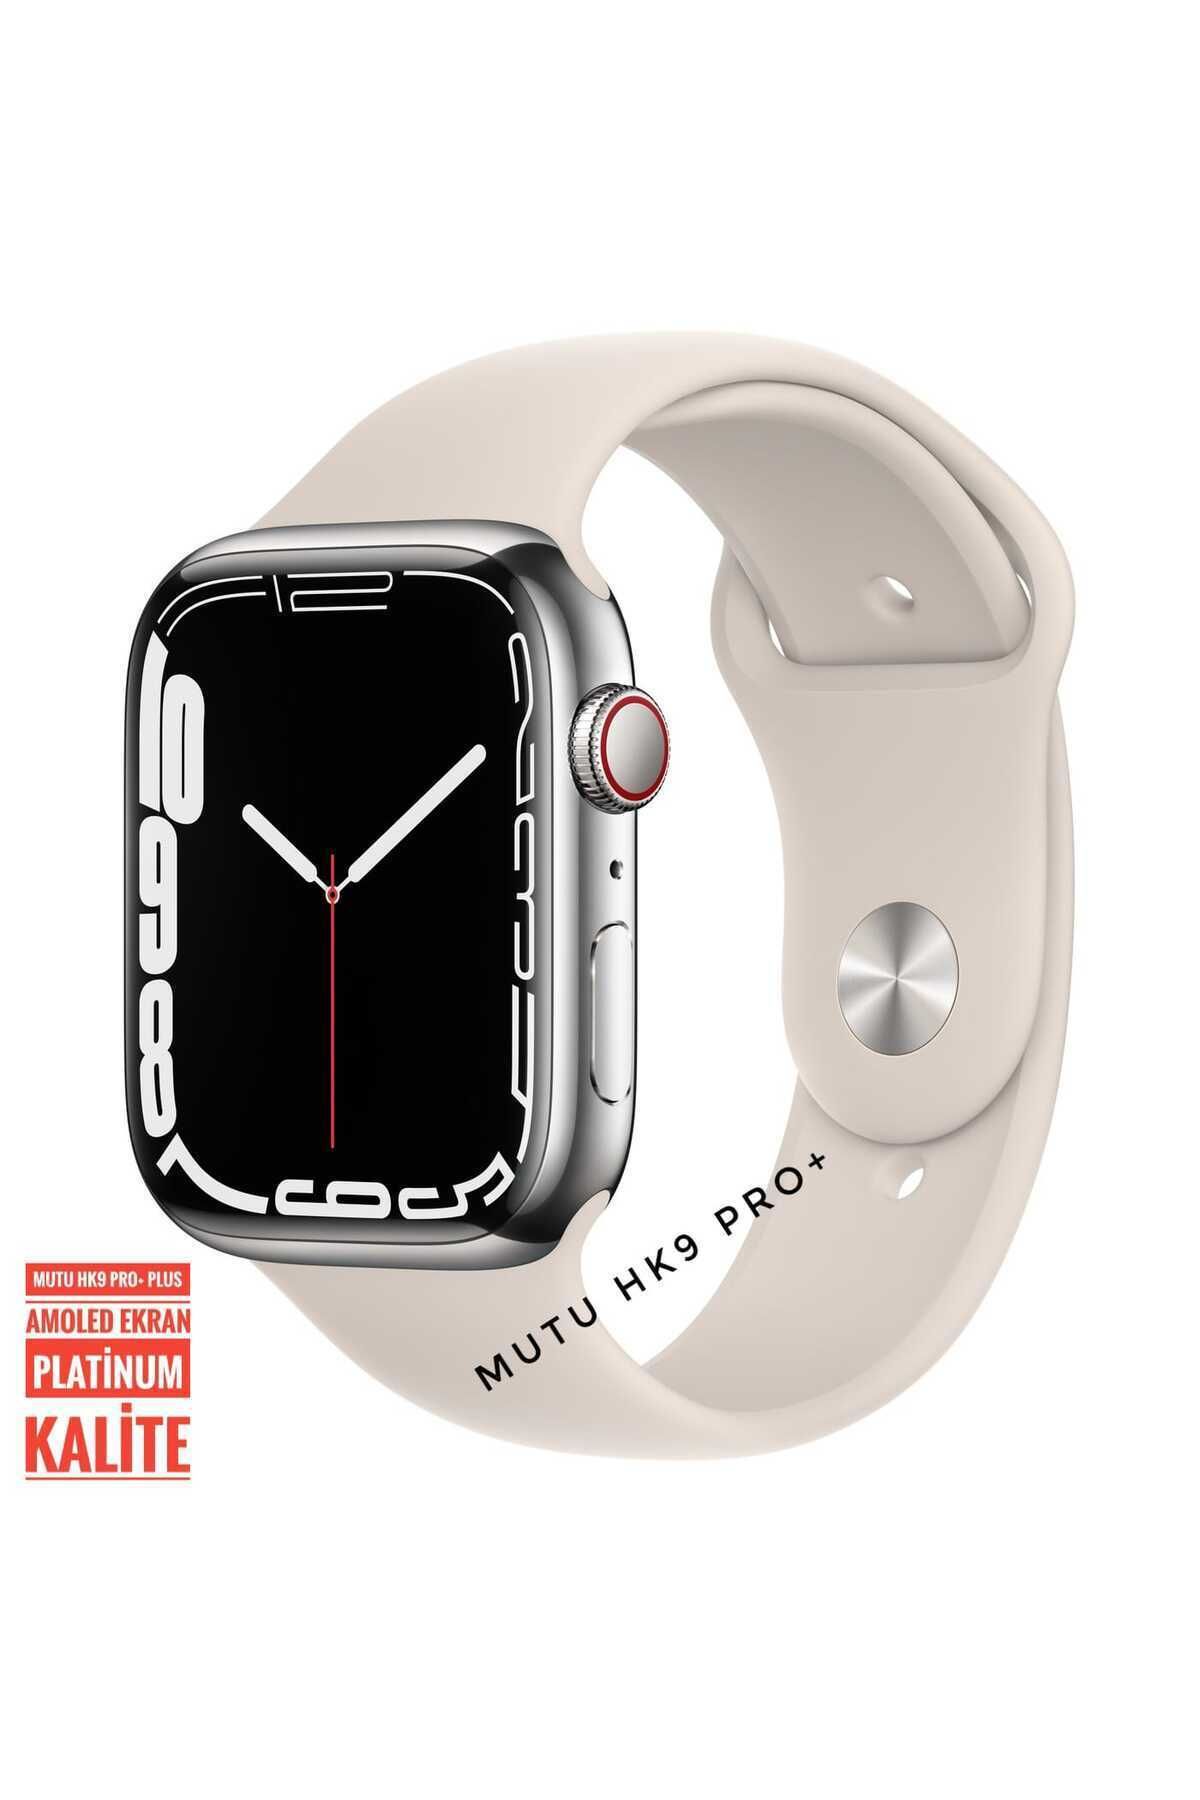 MUTU Hk9 Pro Plus  Platinum Orijinal Son Versiyon Watch 9 Uyumlu  Amoled Ekran Akıllı Saat Smartwatch